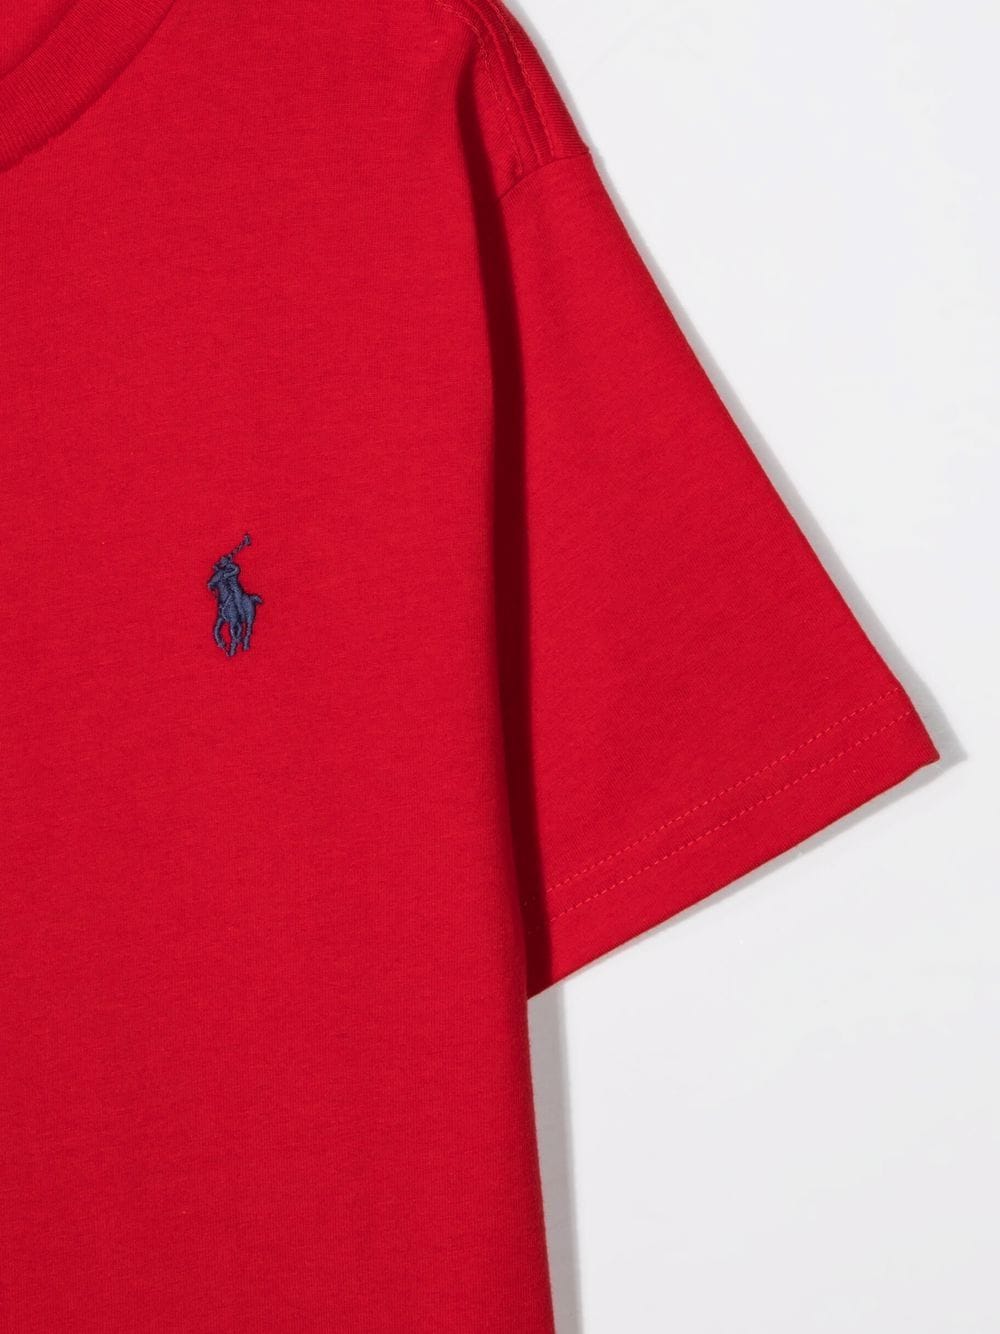 T-shirt rossa in cotone con logo ricamato